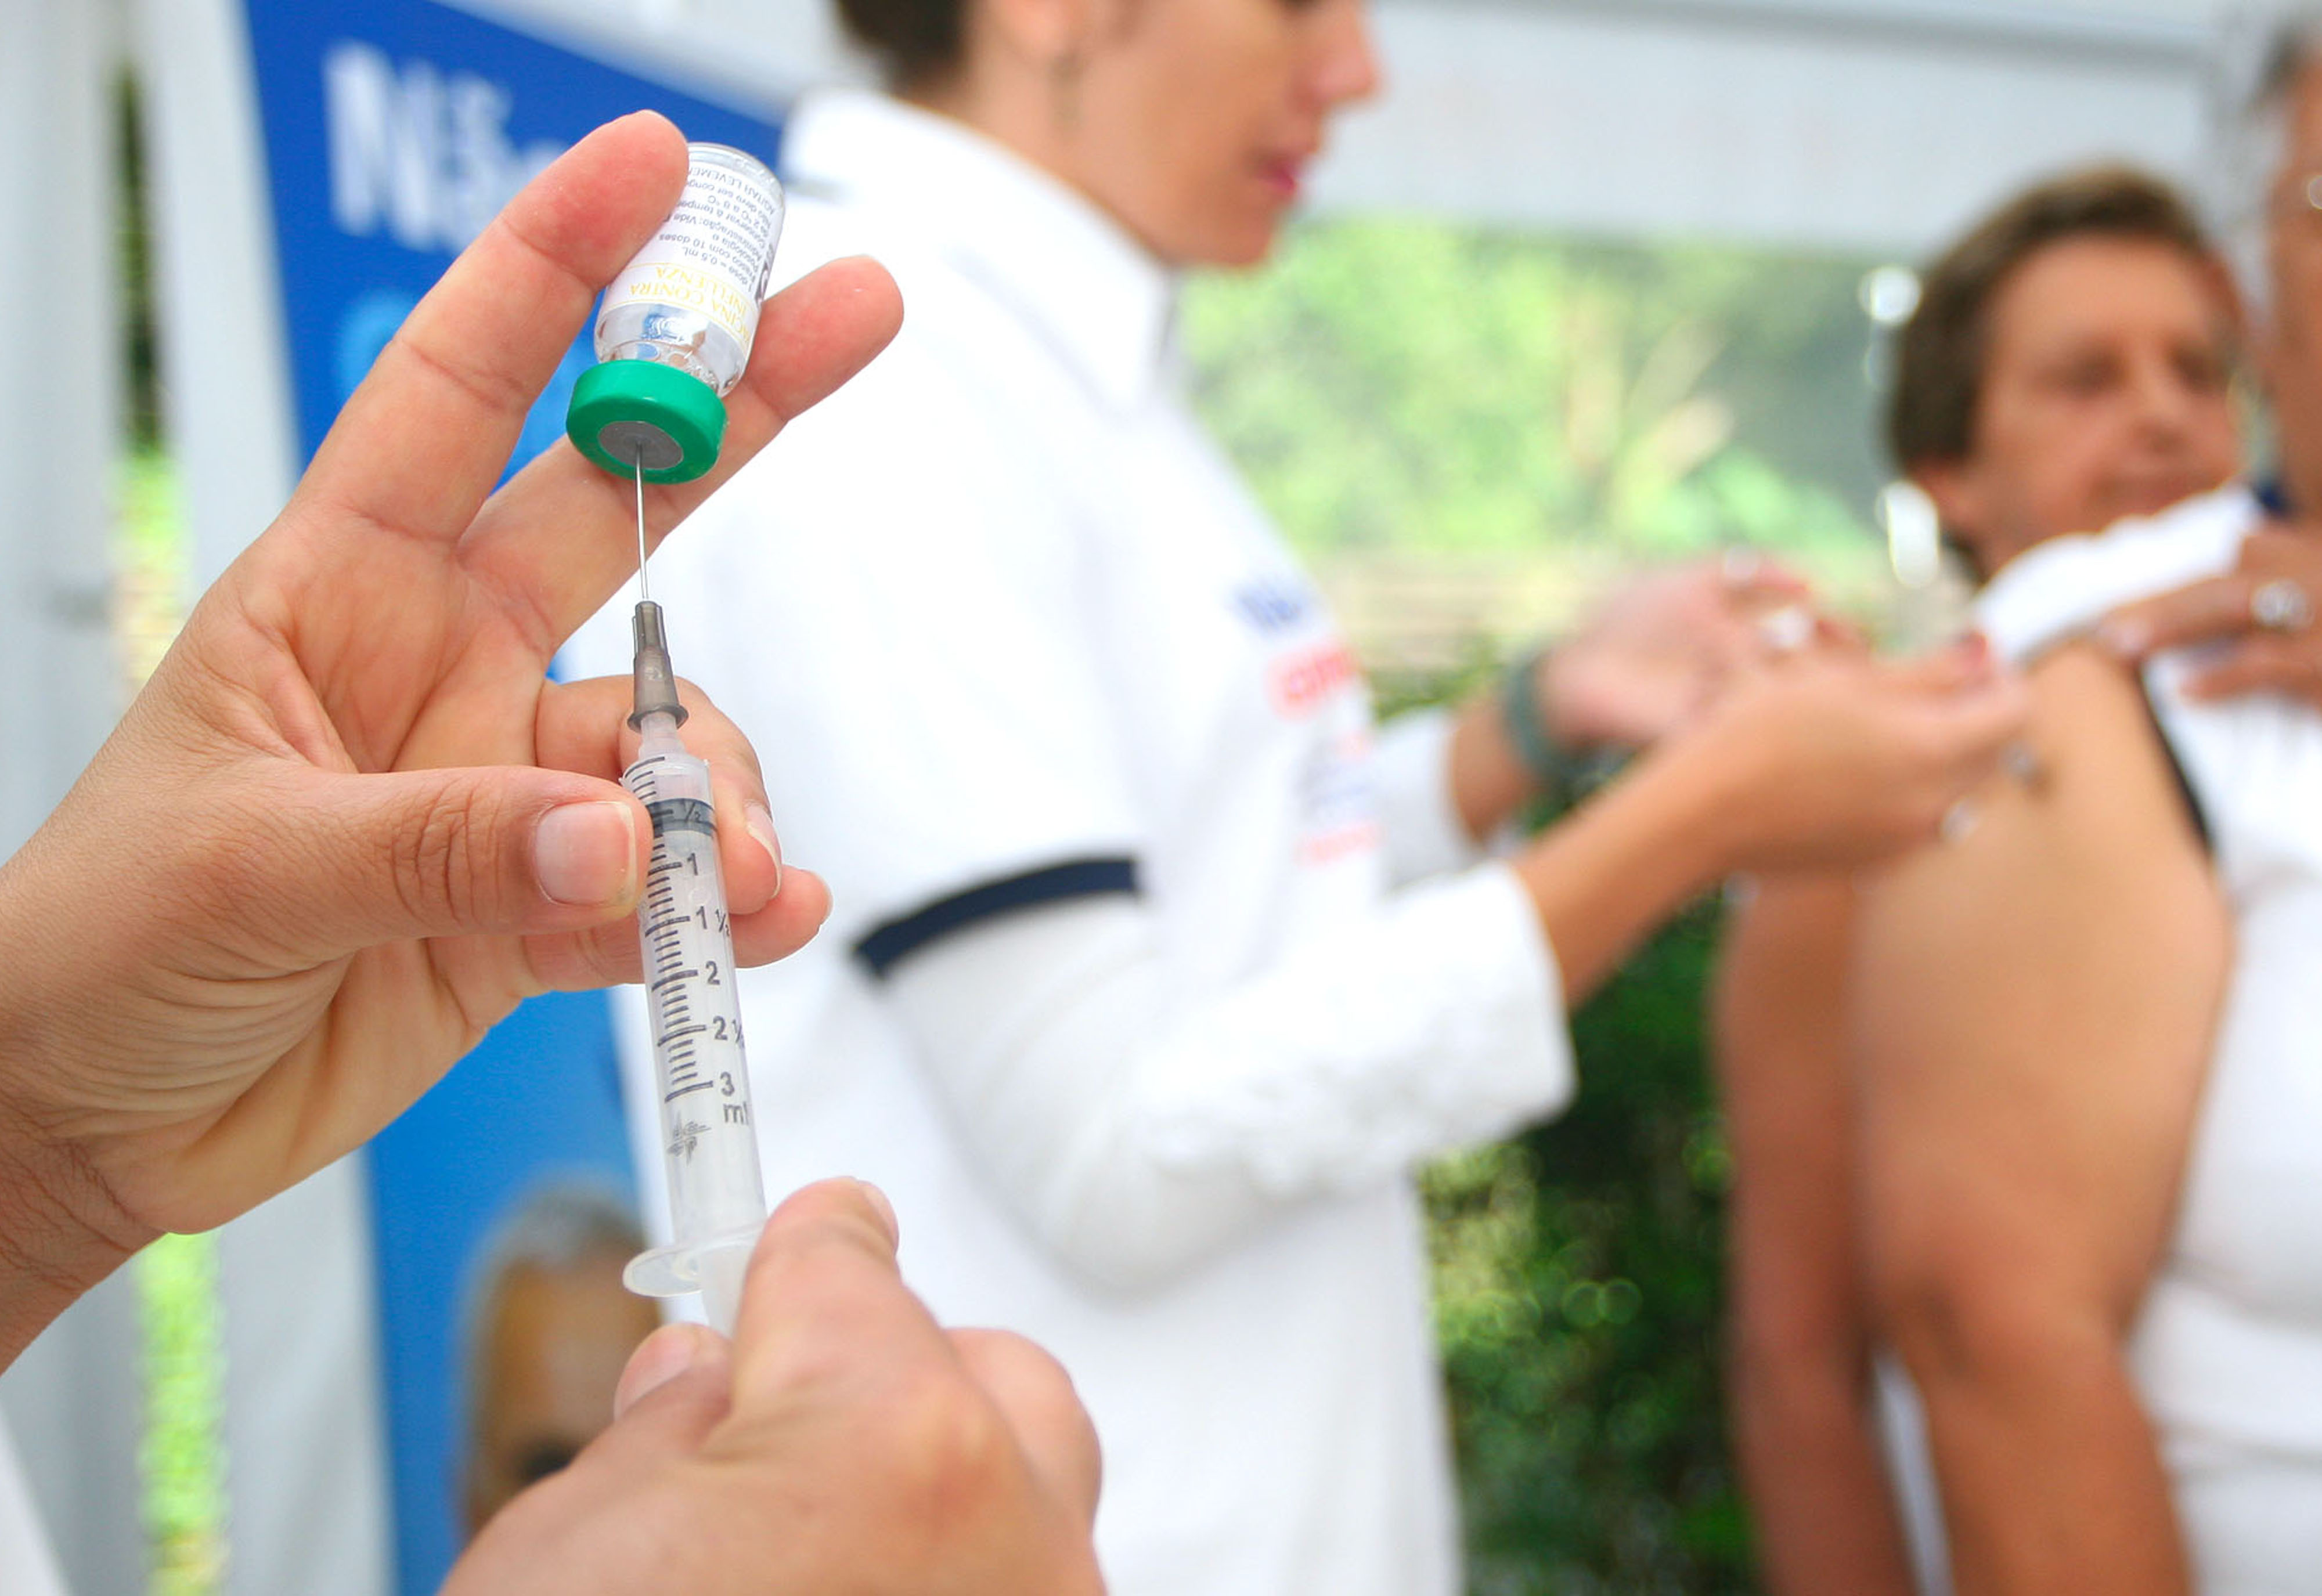 Apesar do surto de sarampo em outros estados, AL não terá campanha de vacinação